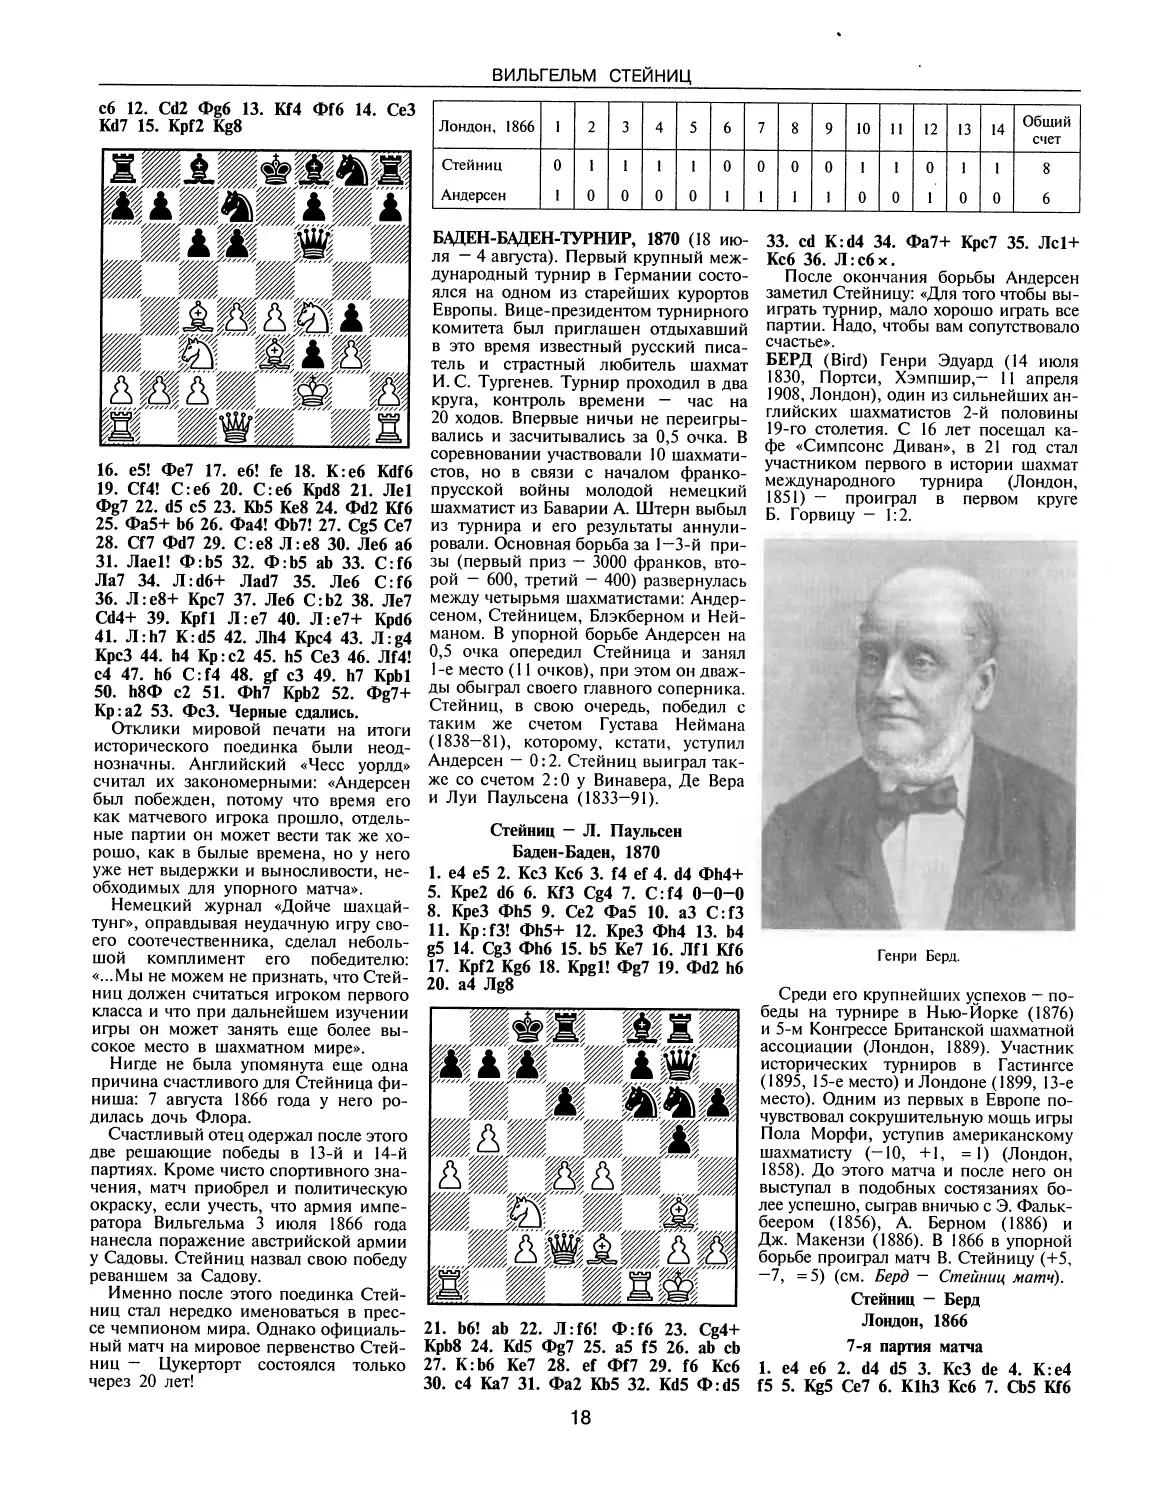 Баден-Баден-турнир, 1870
Берд Г.